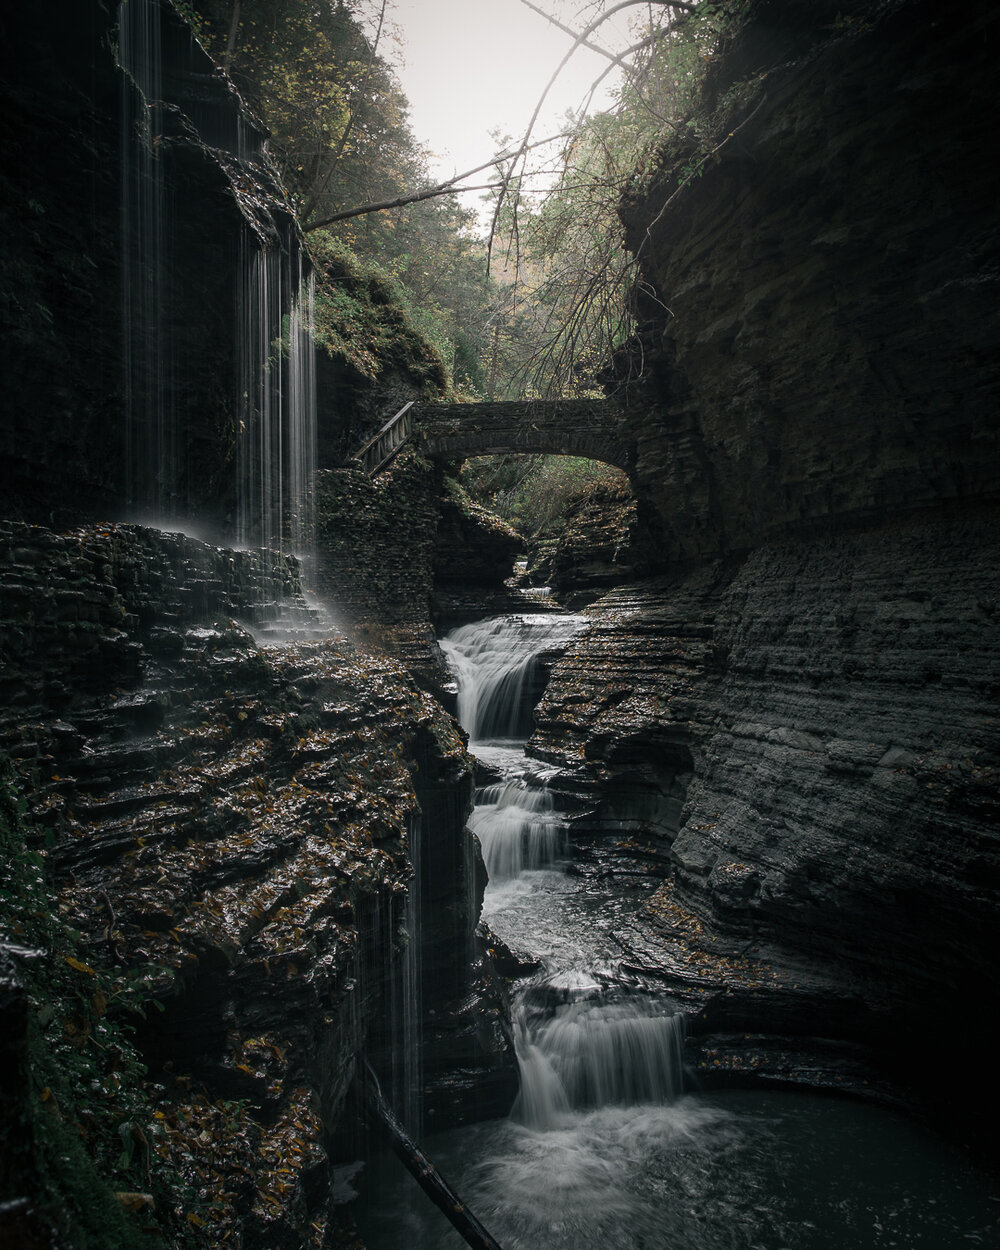  Waterfall at Glen Watkins State Park, NY 